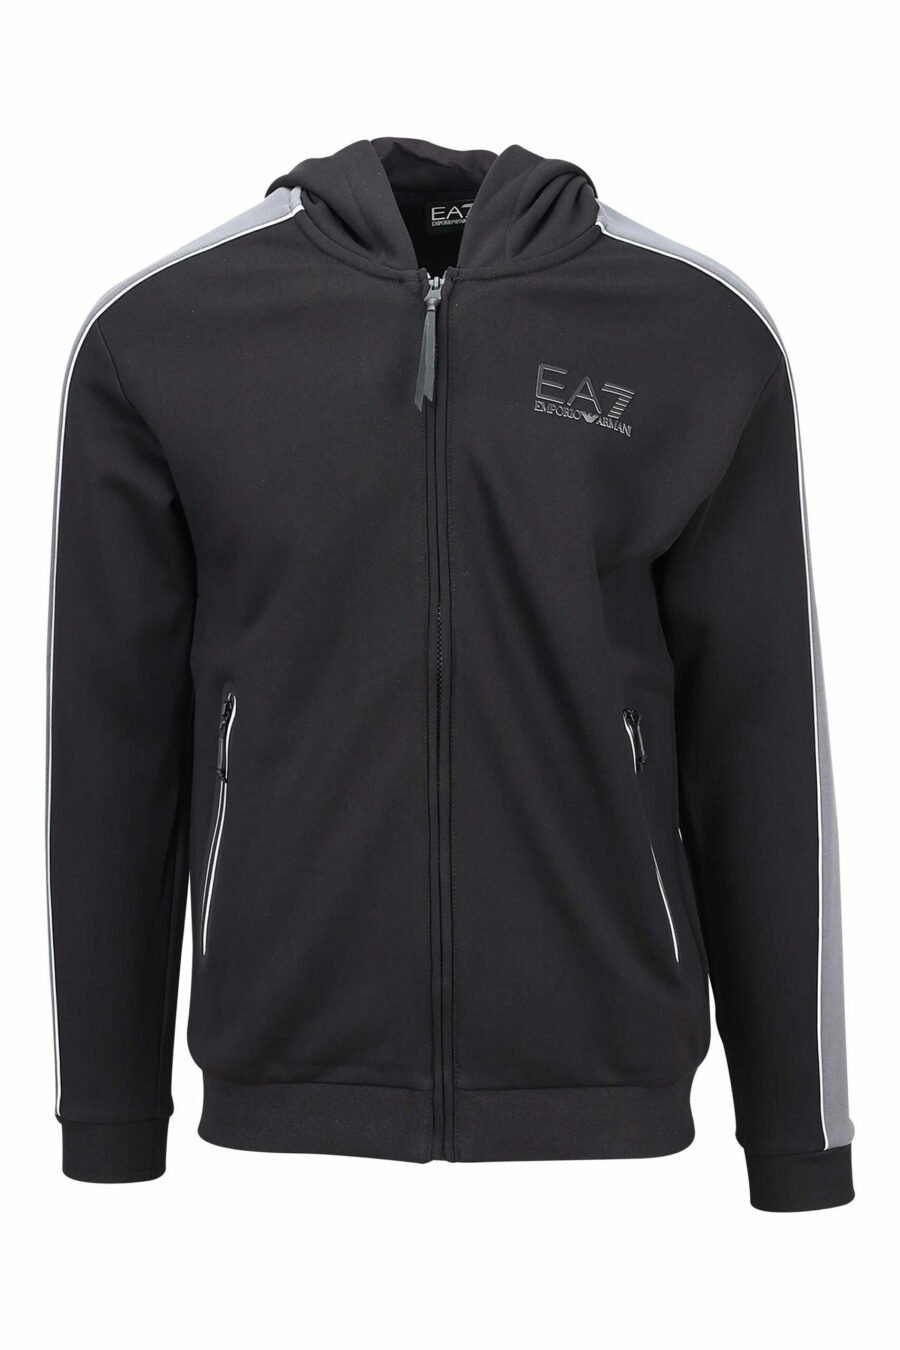 Schwarzes Kapuzensweatshirt mit grauen Linien und grauem Mini-Logo "lux identity" - 8057767628062 skaliert